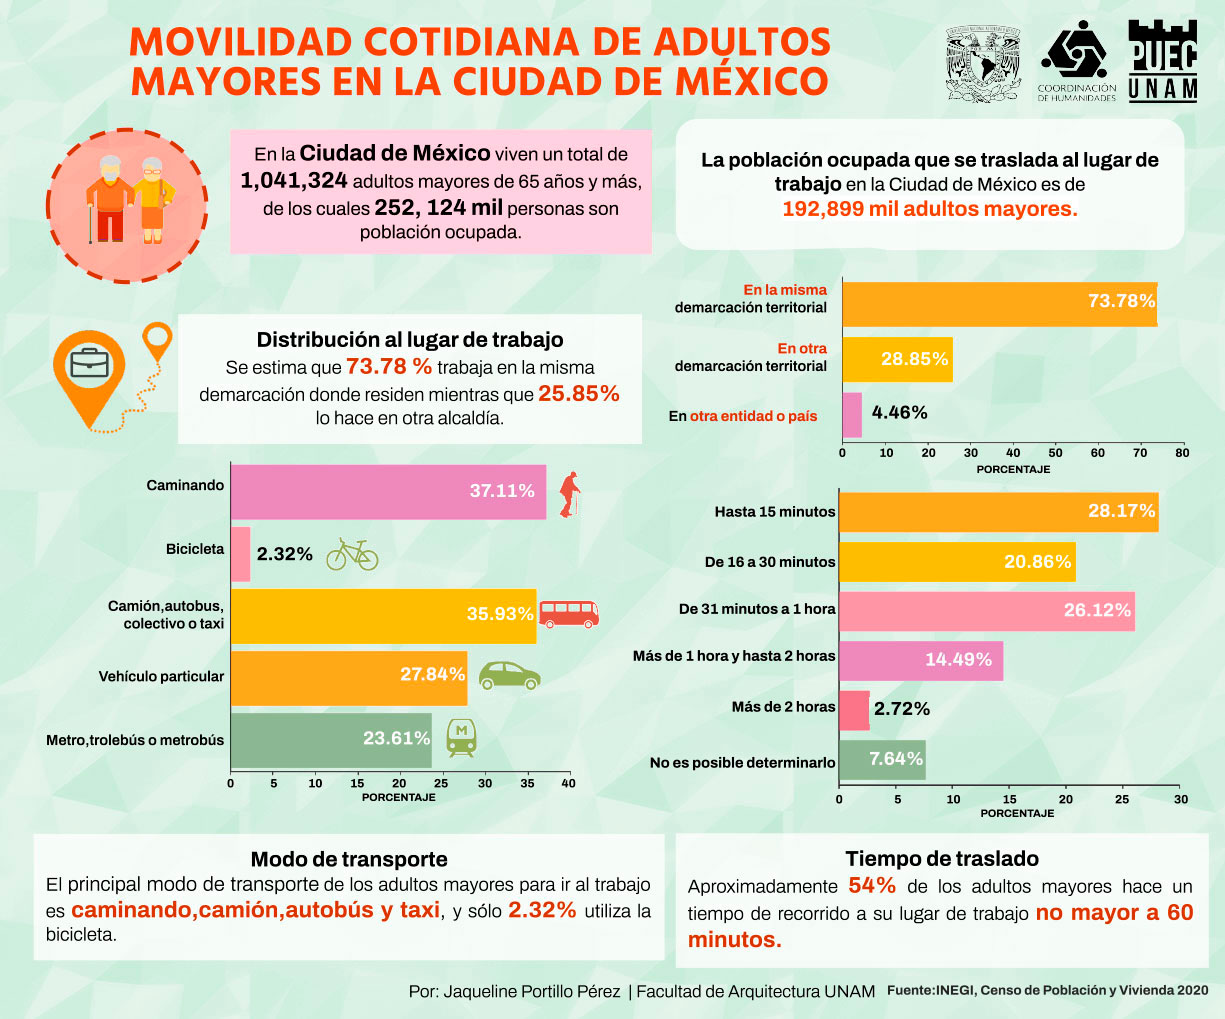 Movilidad cotidiana de adultos mayores en la Ciudad de México